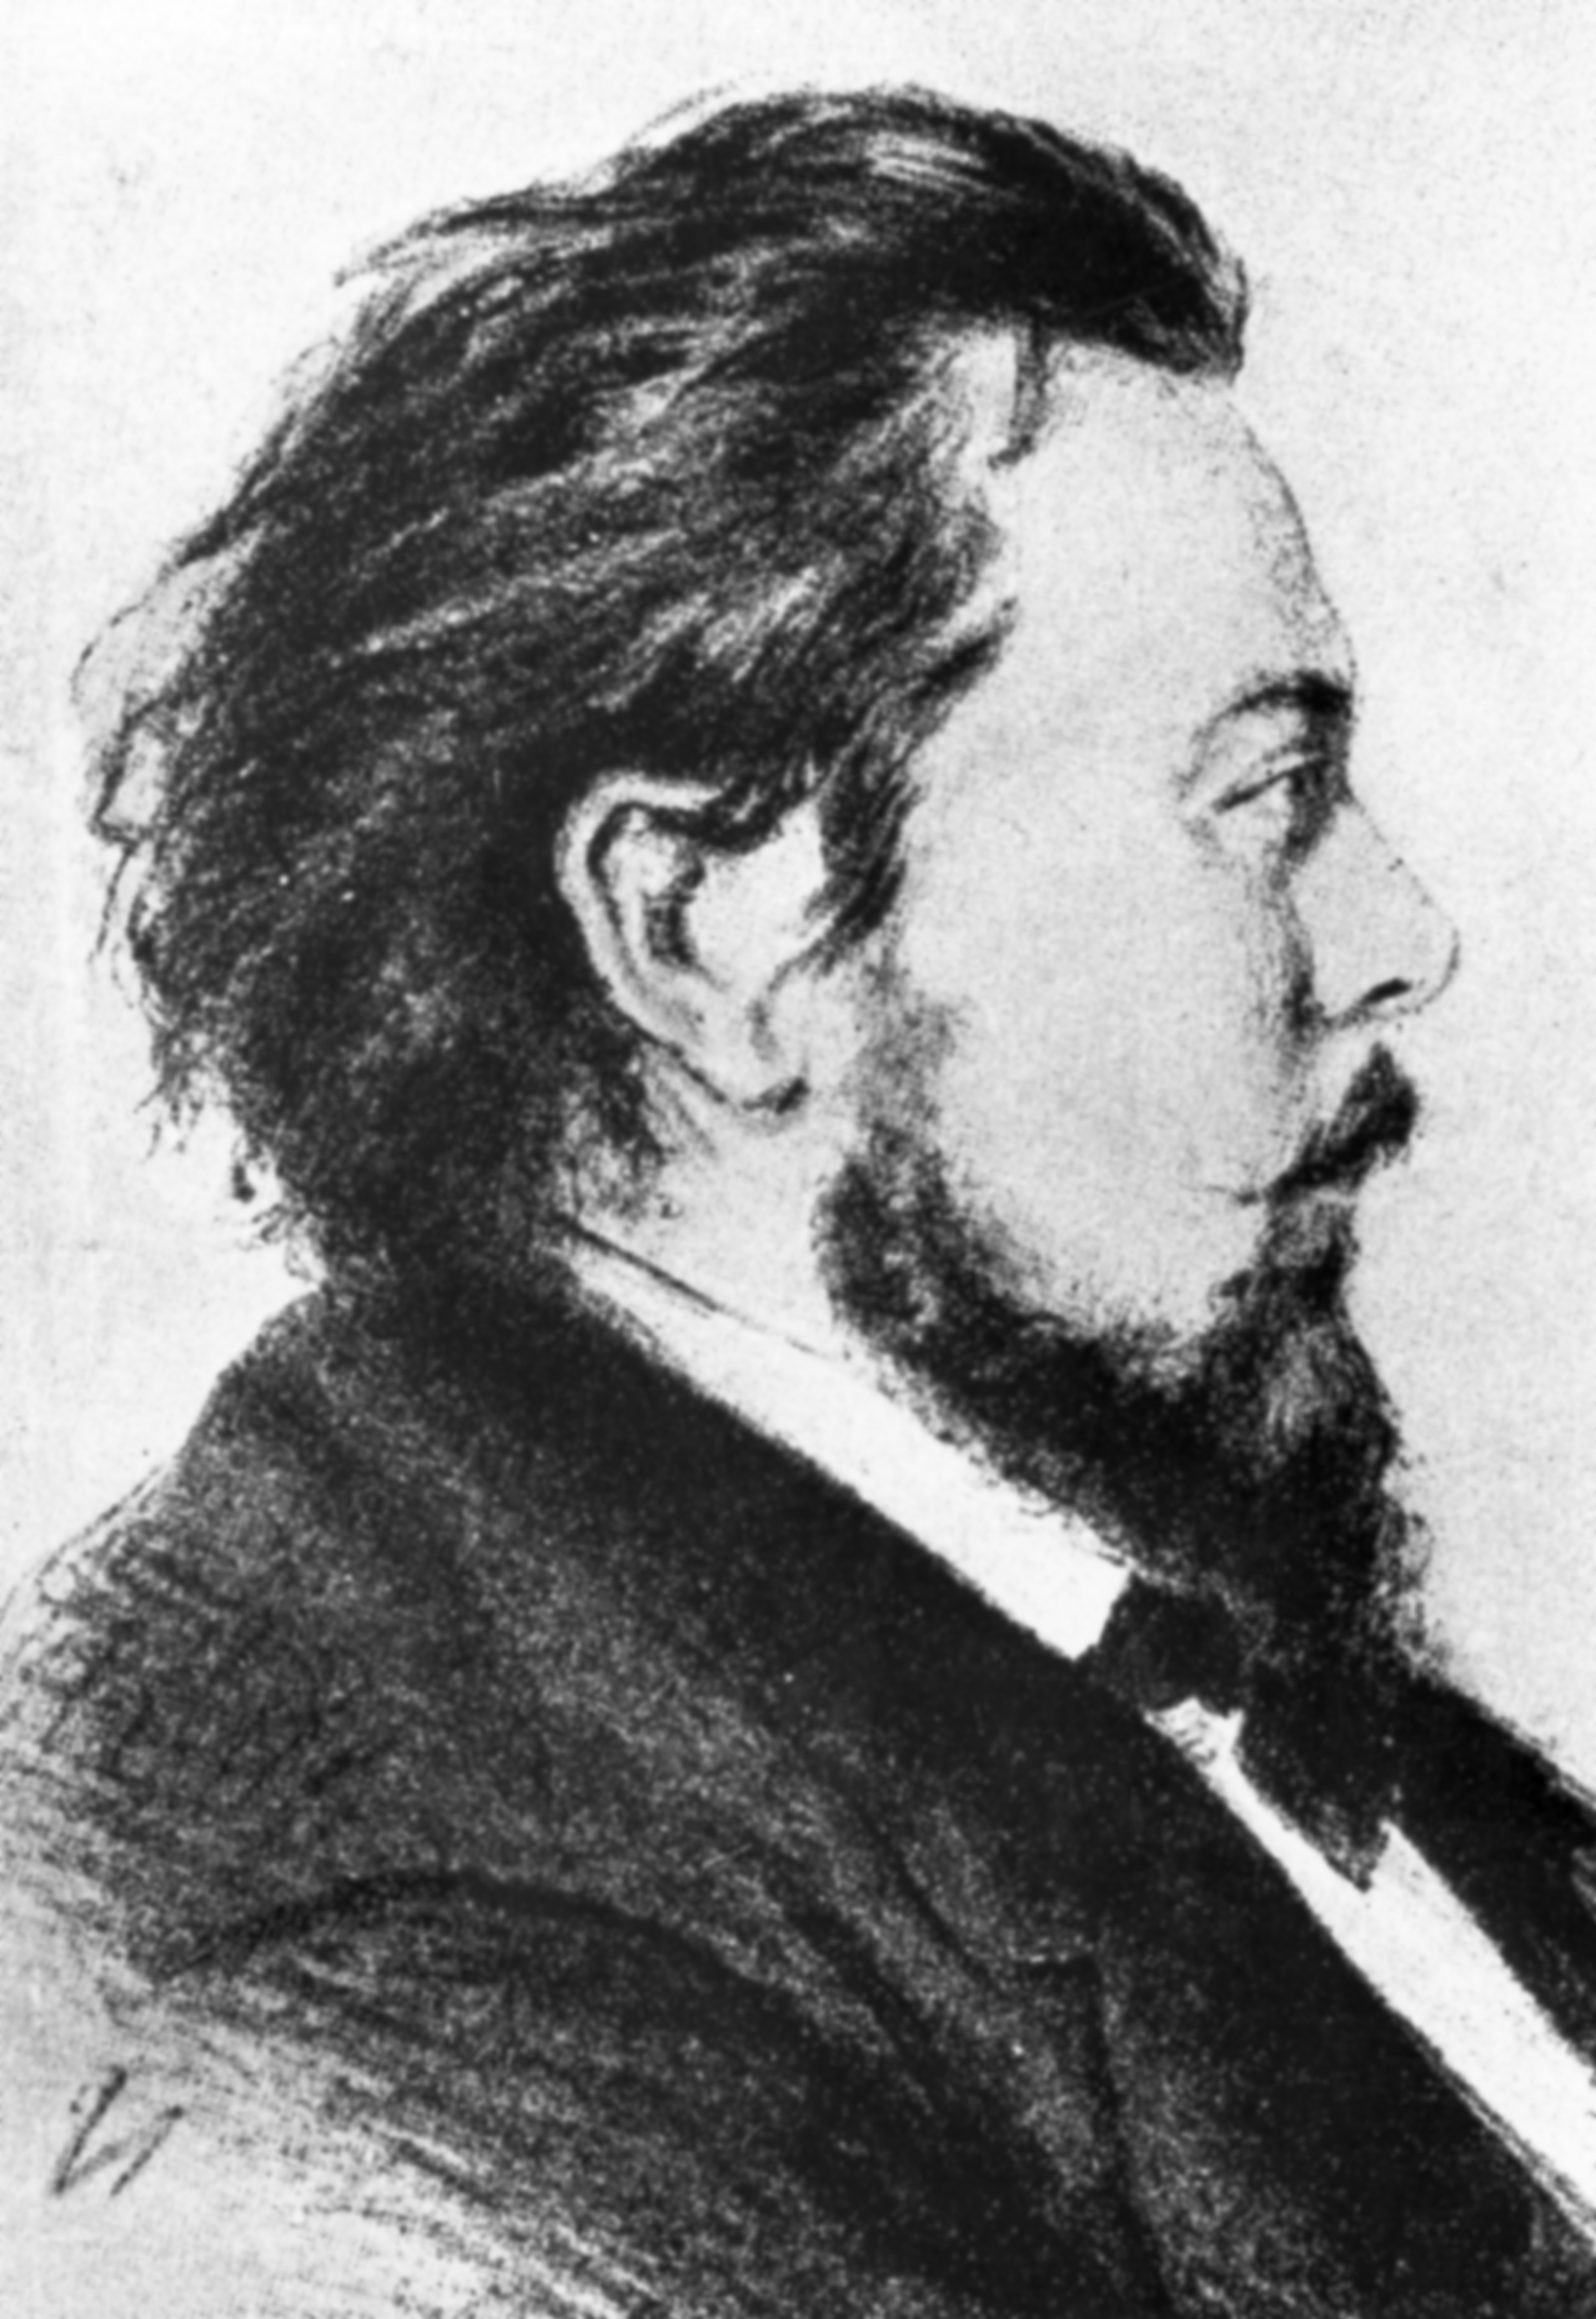 Ritratto di Modest Musorgskij, 1876. Artista: Alexandrovsky.